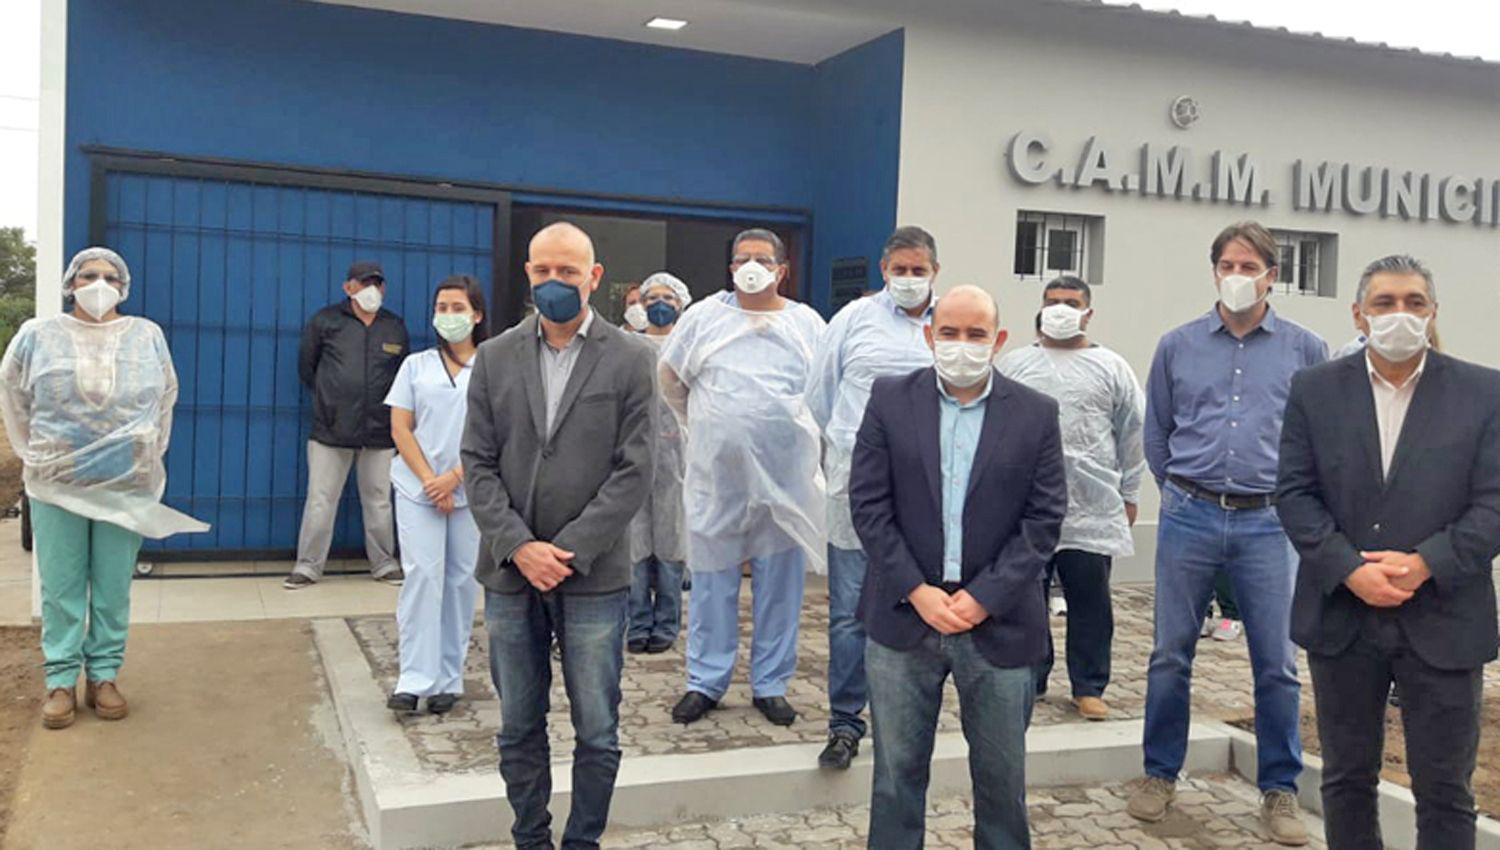 SERVICIO El Camm estar� abierto las 24 horas mientras dure la emergencia sanitaria por el coronavirus
